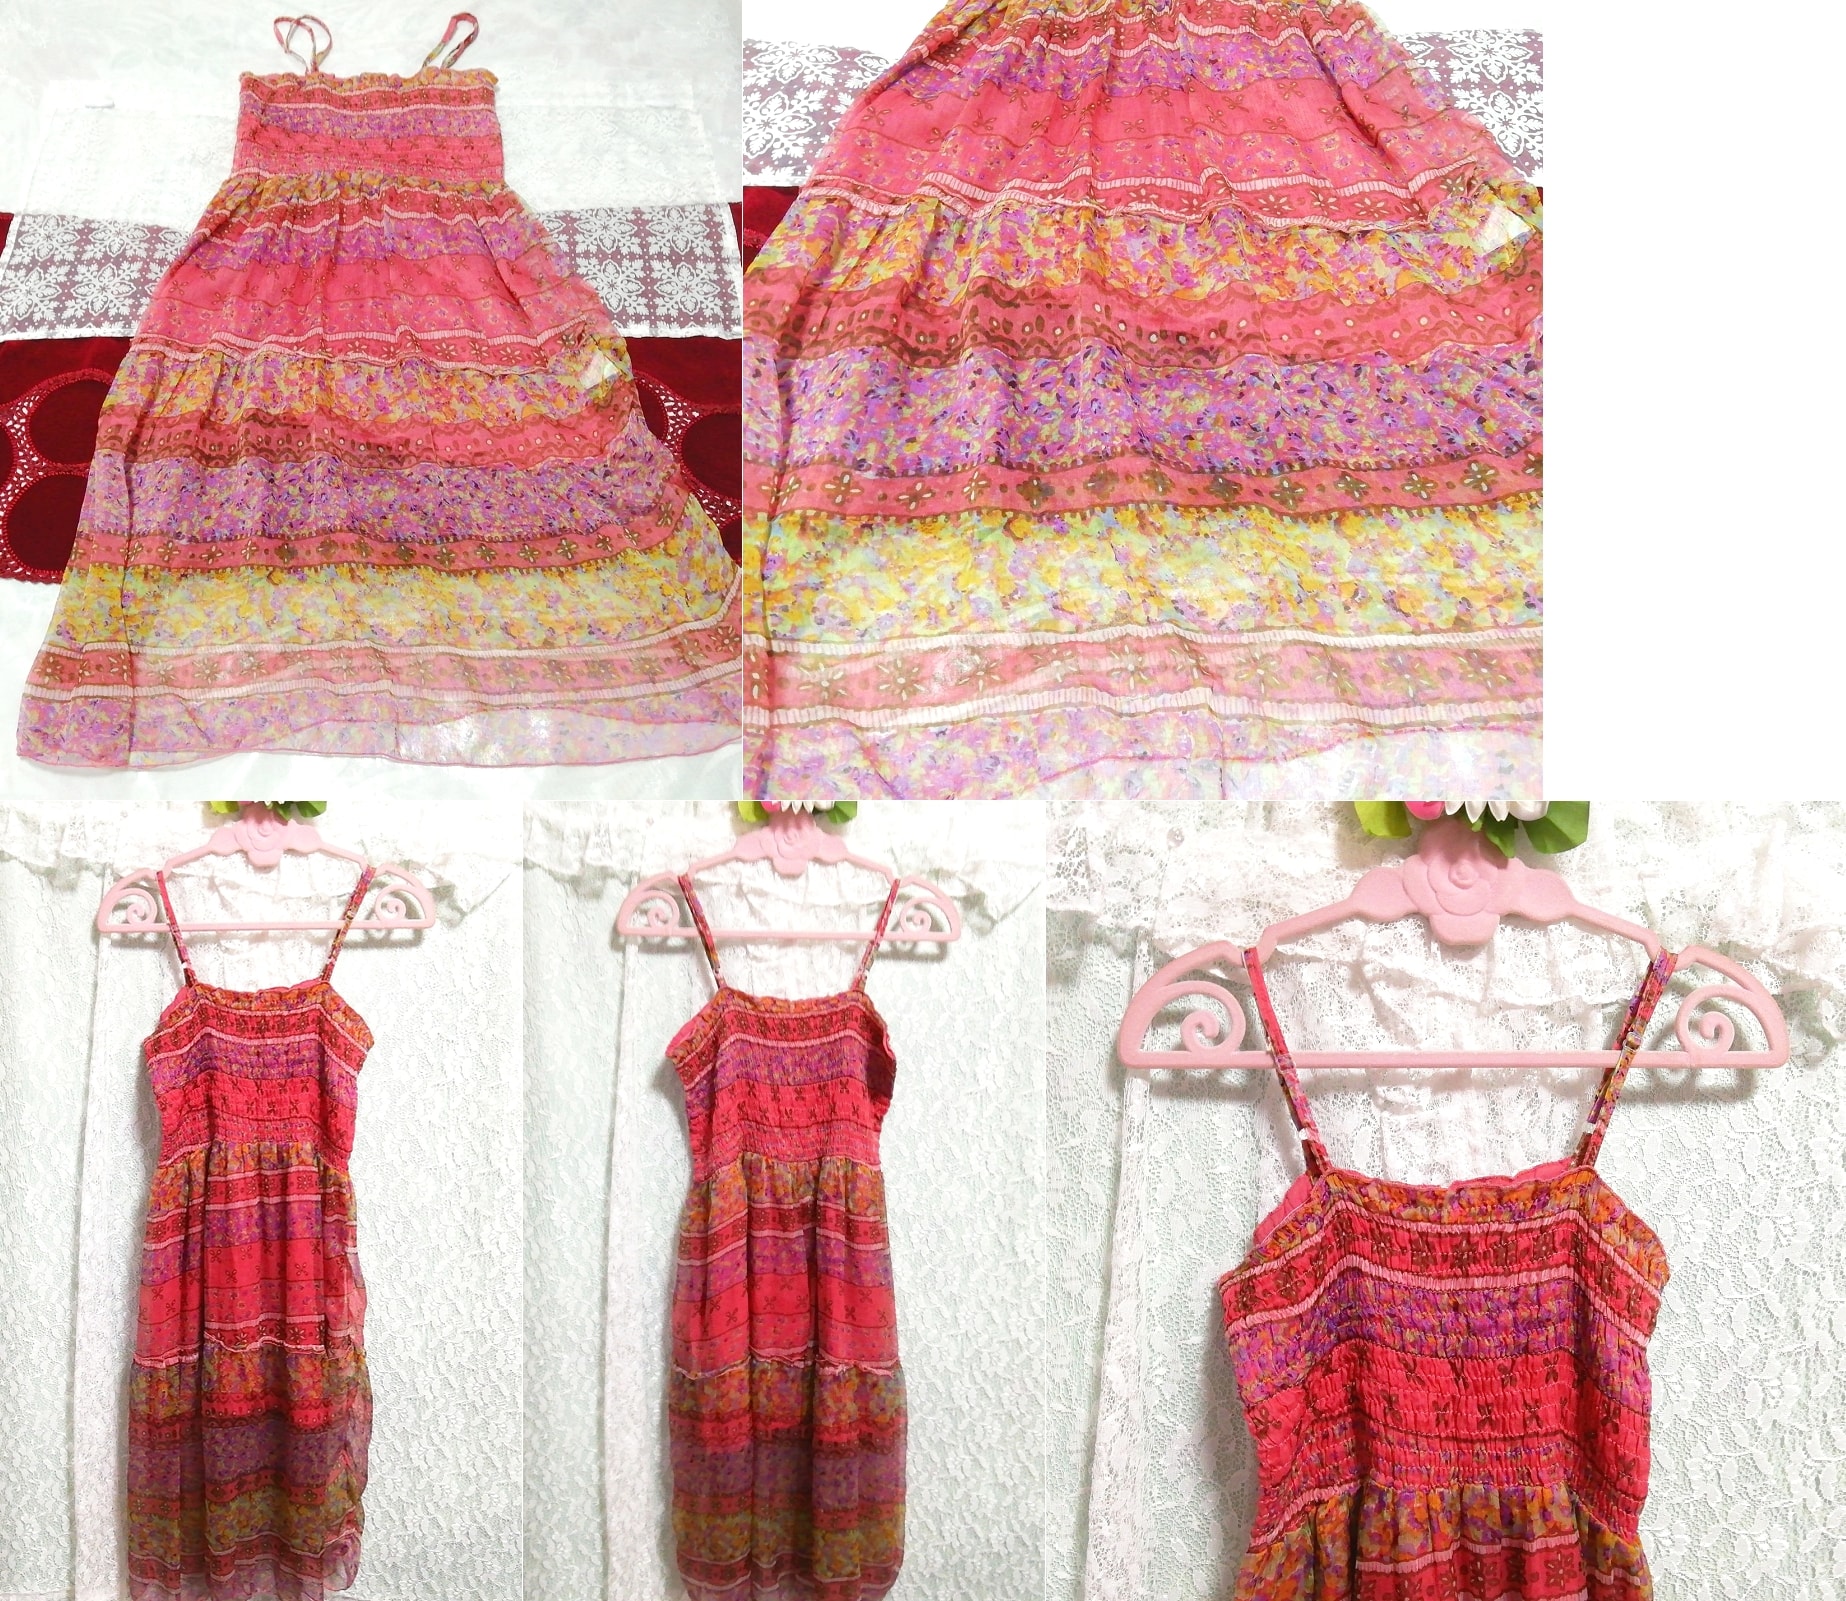 Rot-rosa Chiffon-Negligé-Nachthemd mit Blumenmuster und Babydoll-Kleid, Mode, Frauenmode, Leibchen